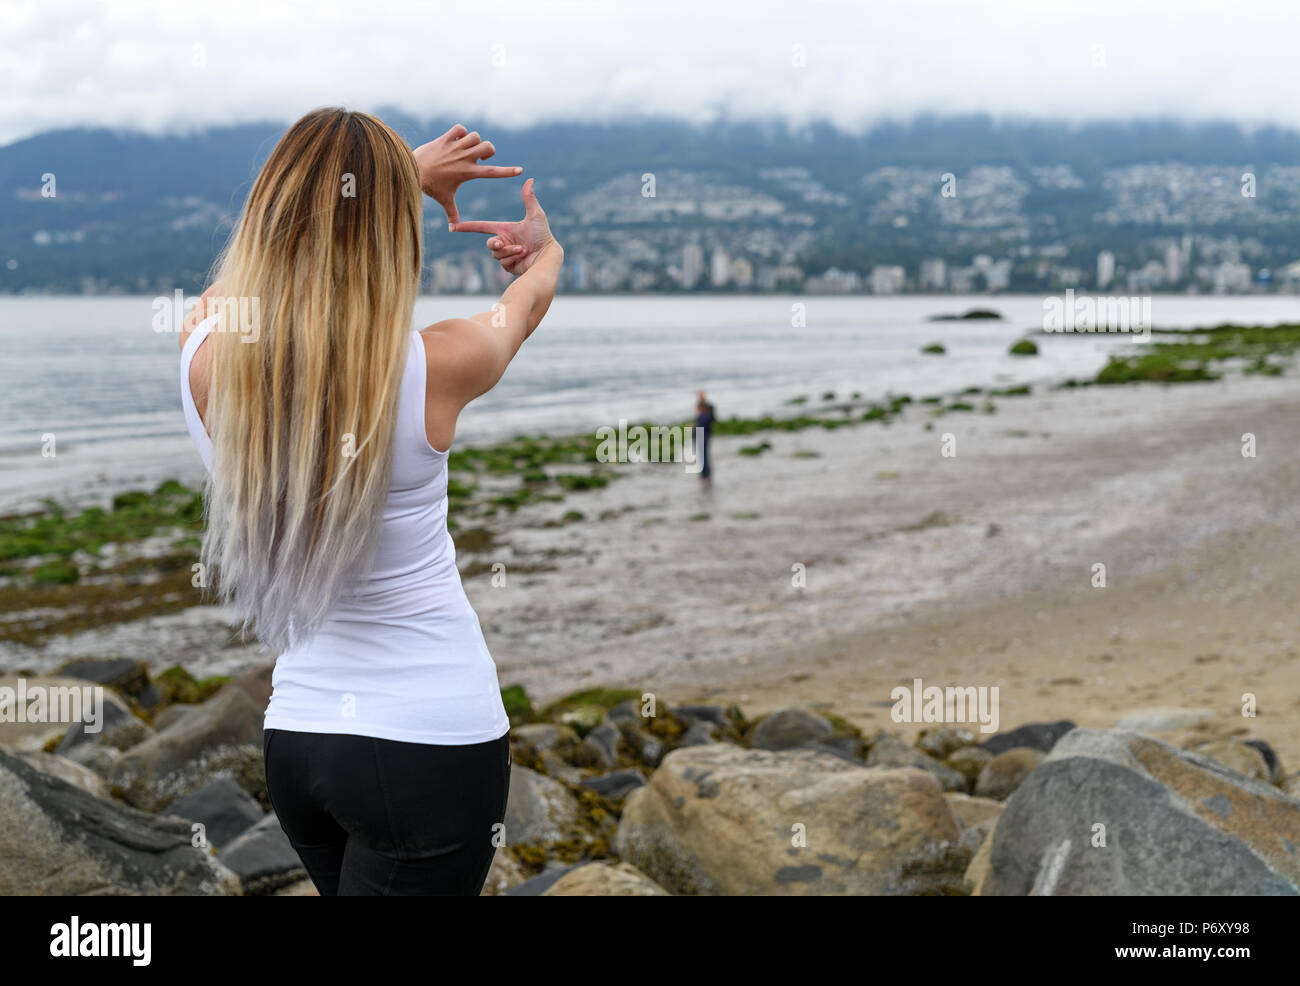 Mujer joven en la playa del Parque Stanley en busca de Vancouver, en la ladera de la colina y enmarcar la vista con las manos, tratando de imaginar un lugar agradable para vivir. Foto de stock